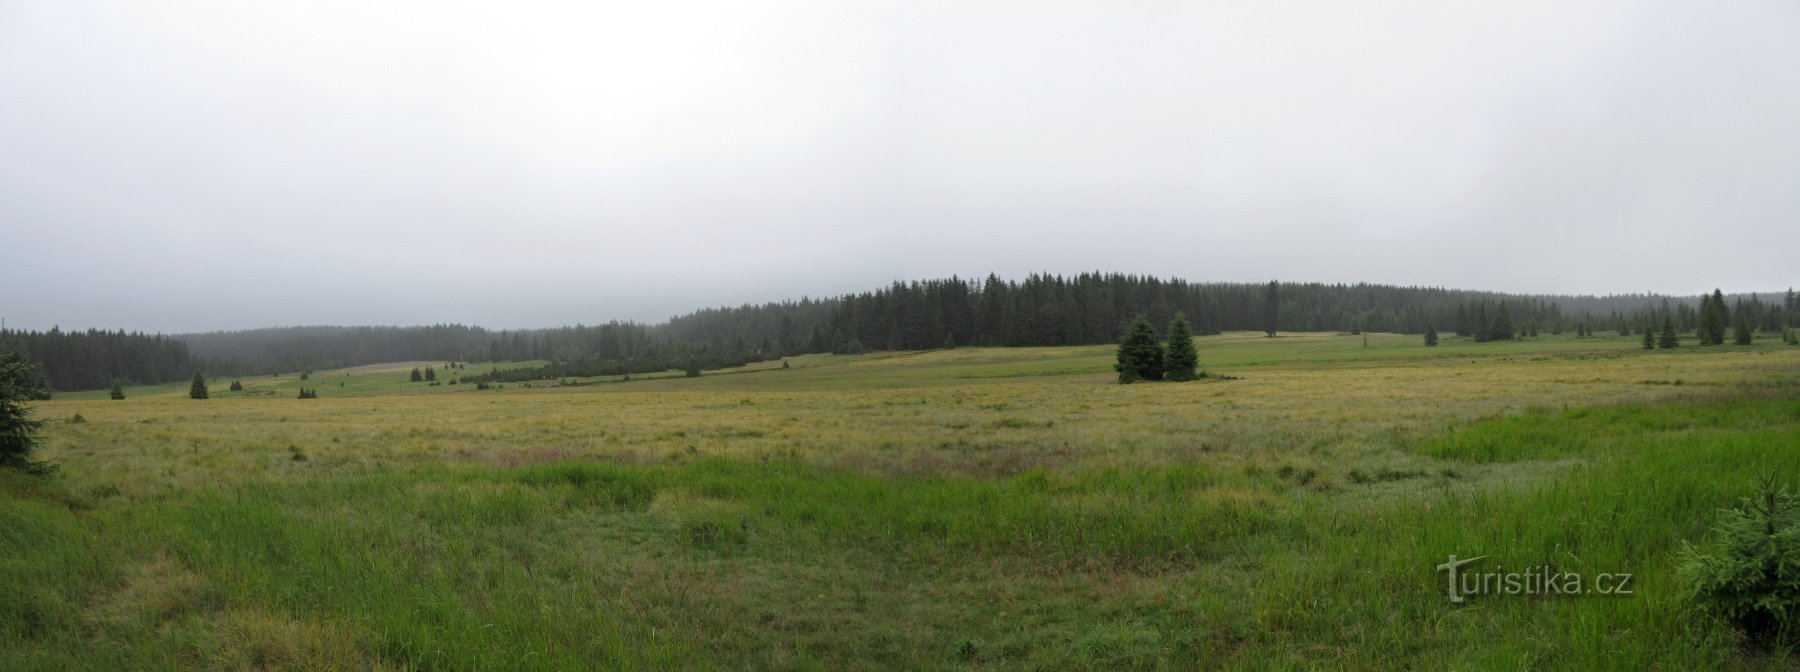 Državni naravni rezervat Rolavská vrchoviště